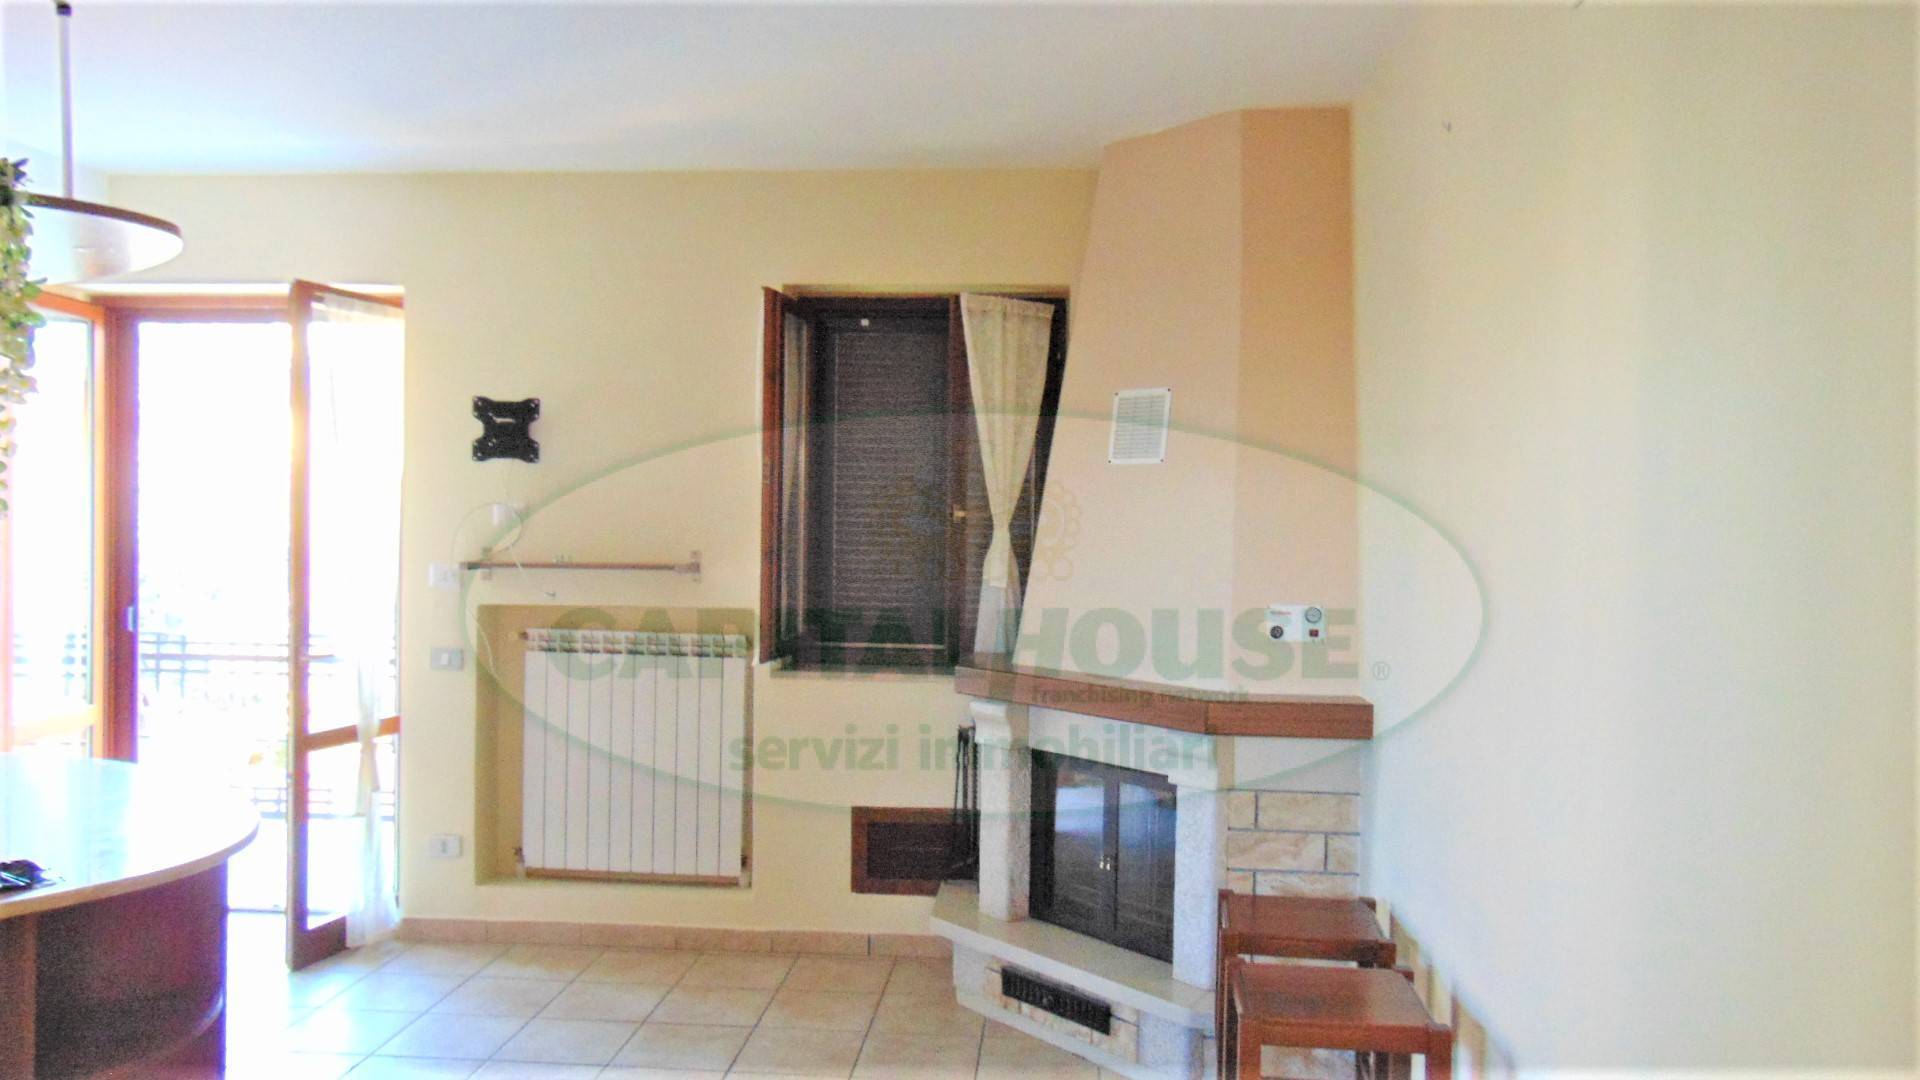 Appartamento in vendita a Sirignano, 3 locali, prezzo € 110.000 | CambioCasa.it